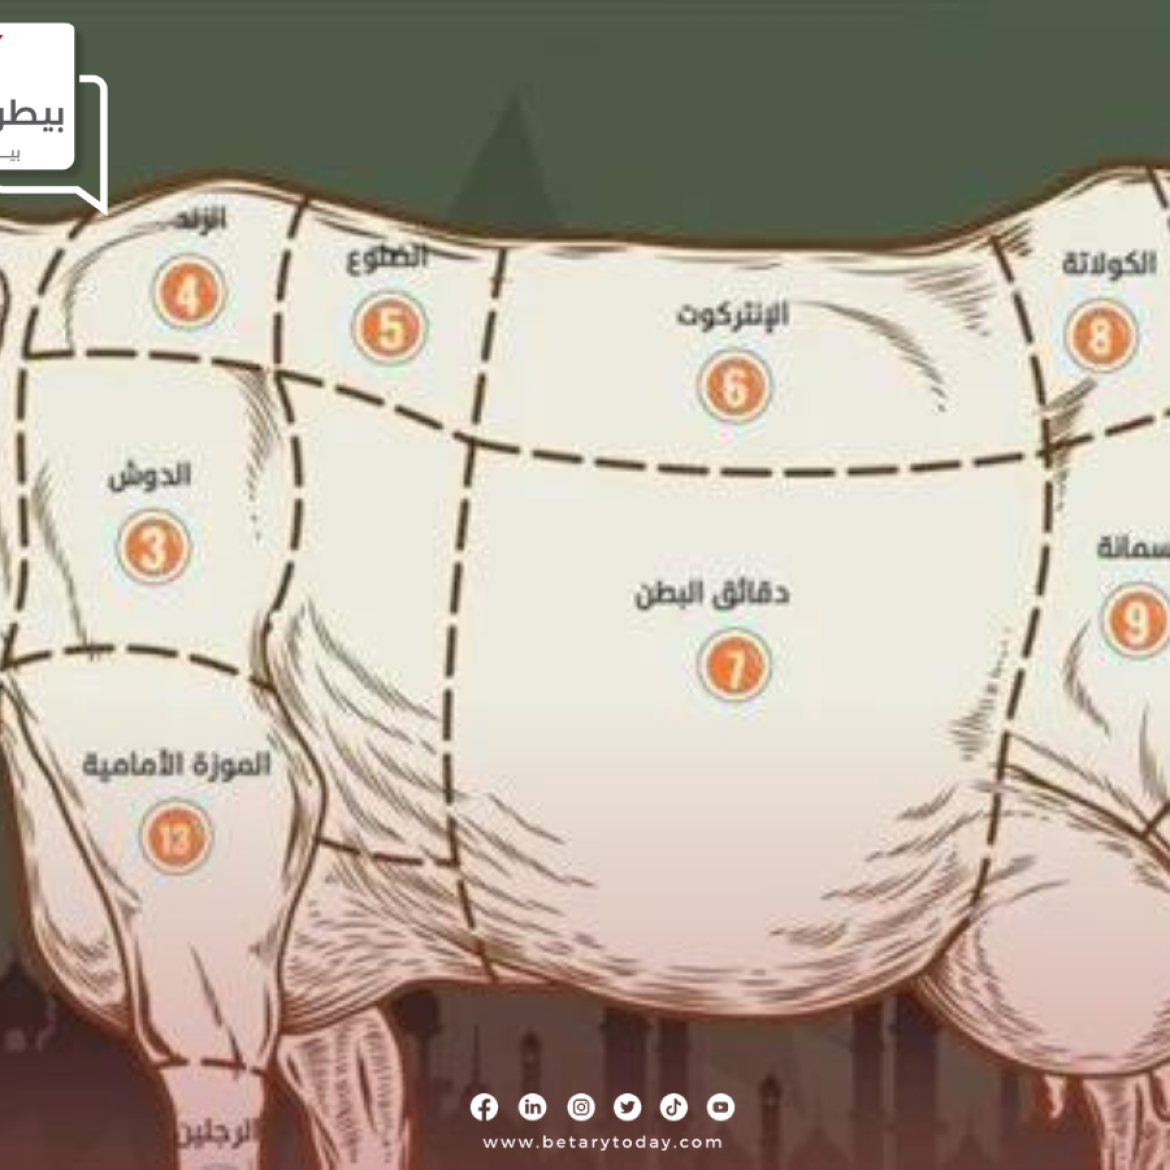 قبل أيام من عيد الاضحى… تعرف على قطعيات اللحوم المختلفة